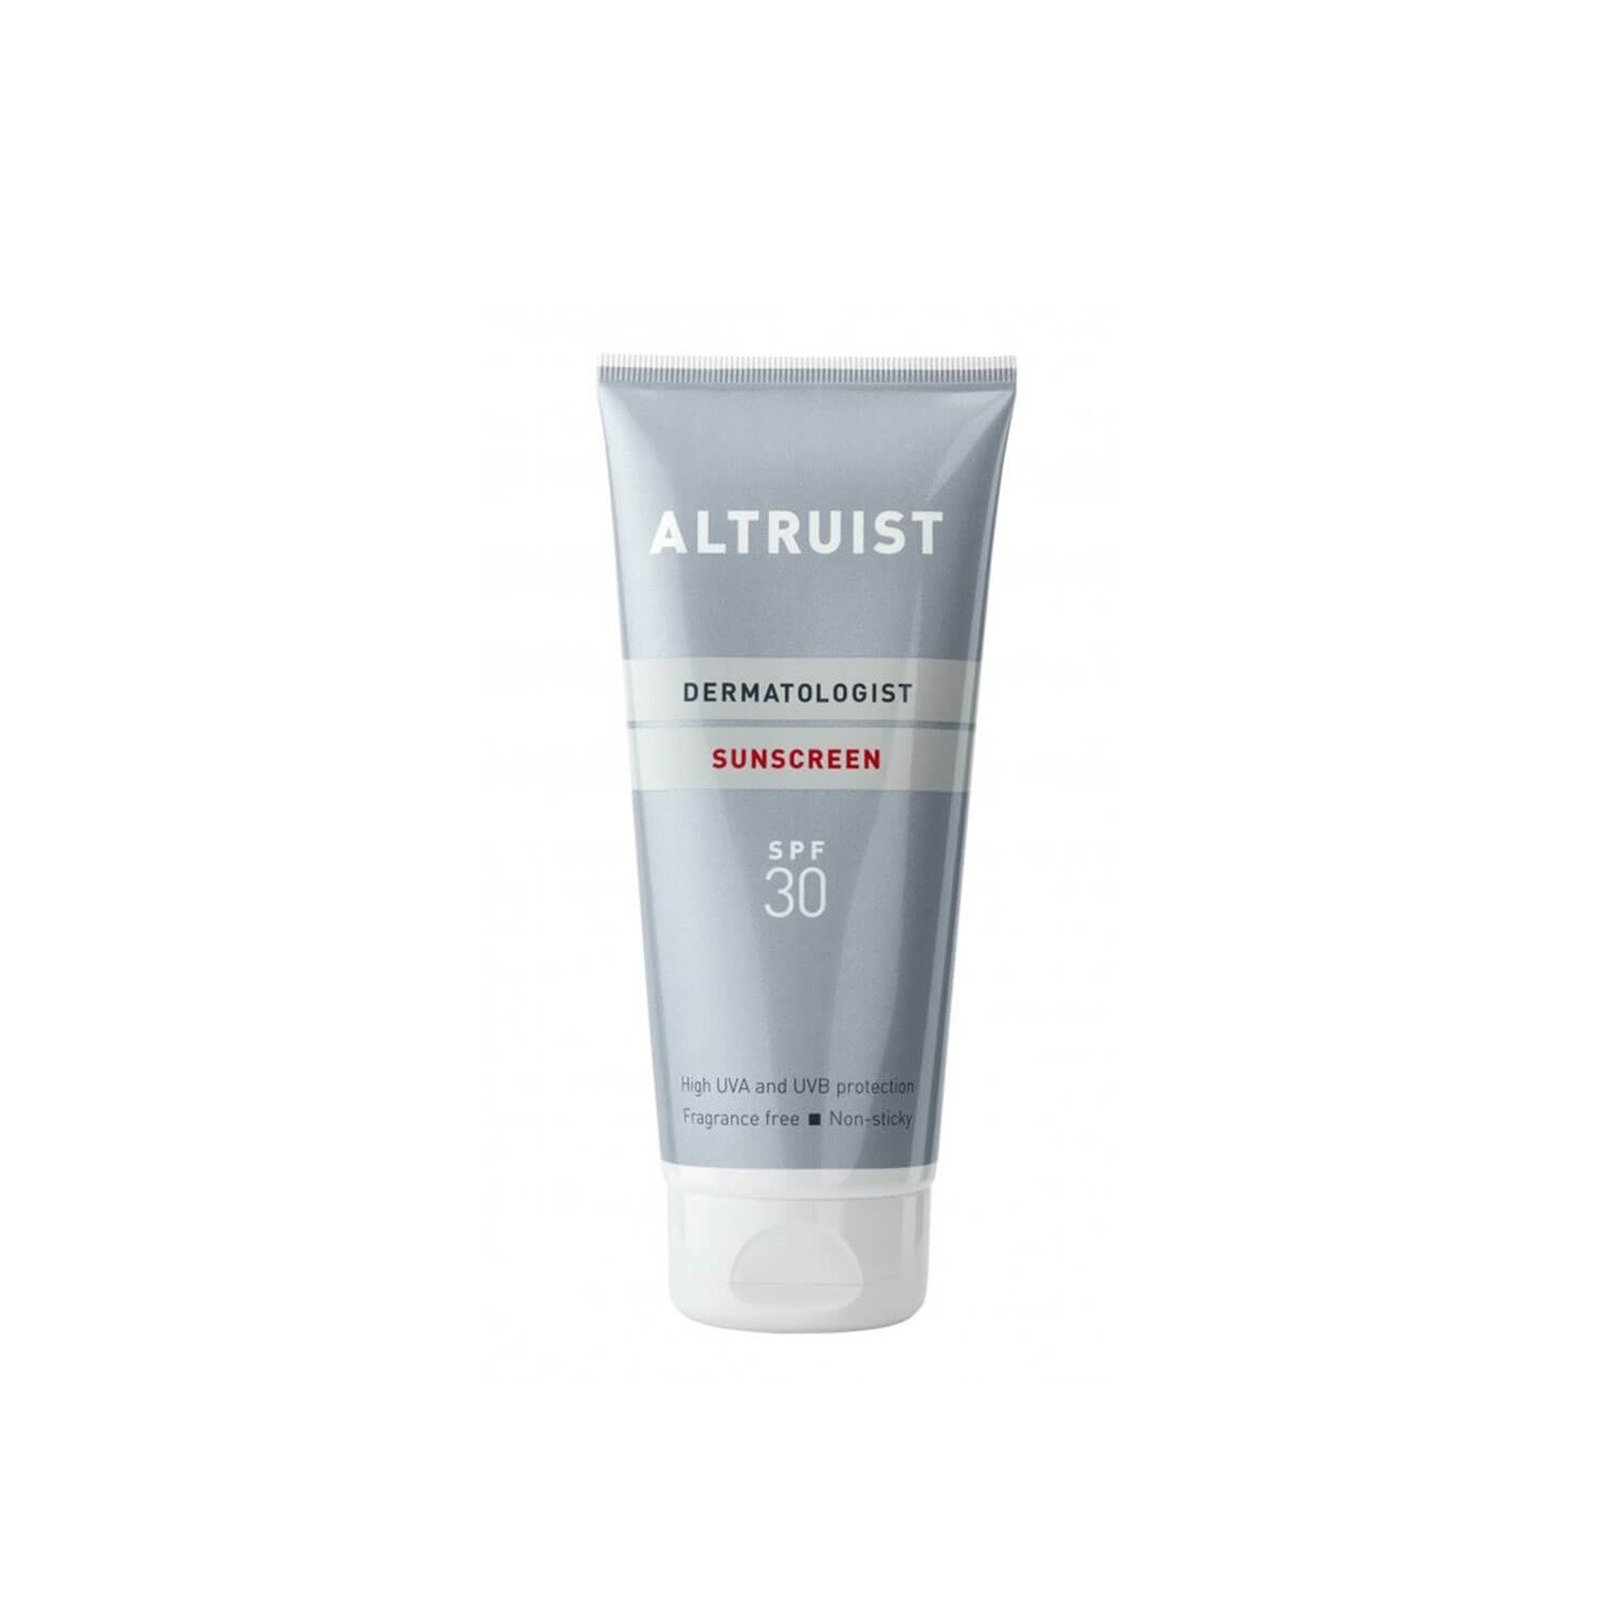 Altruist Sunscreen SPF30 200ml (6.76 fl oz)